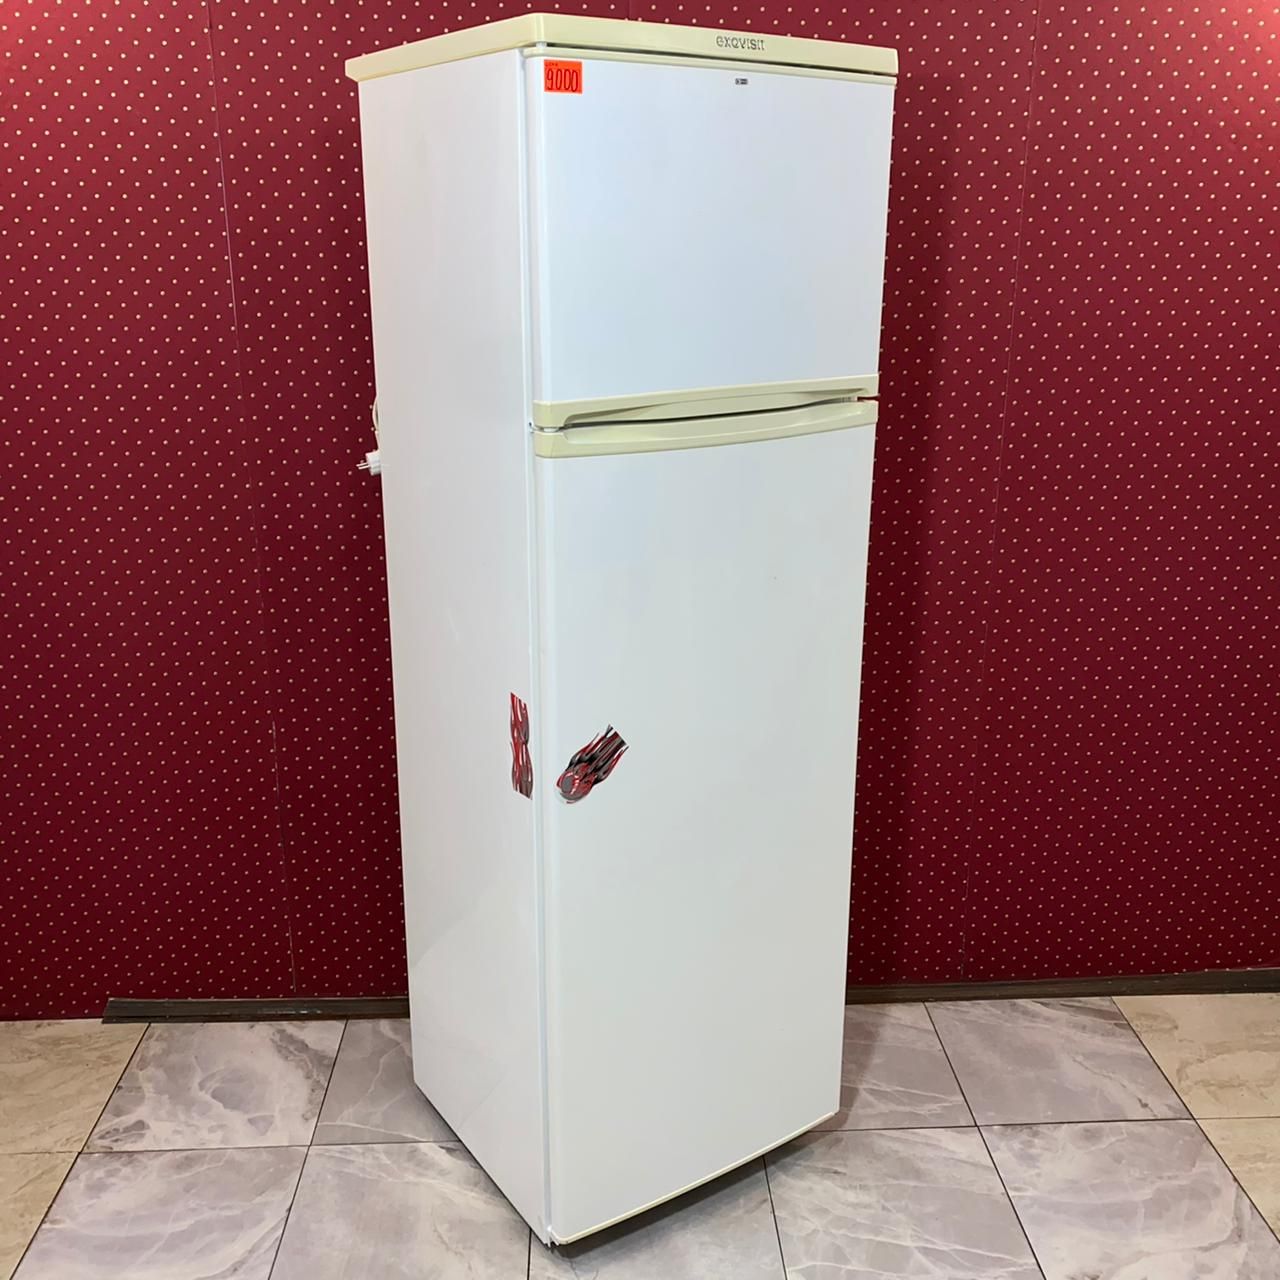 Exqvisit KШД-350/65 - Холодильники с верхней морозильной камерой